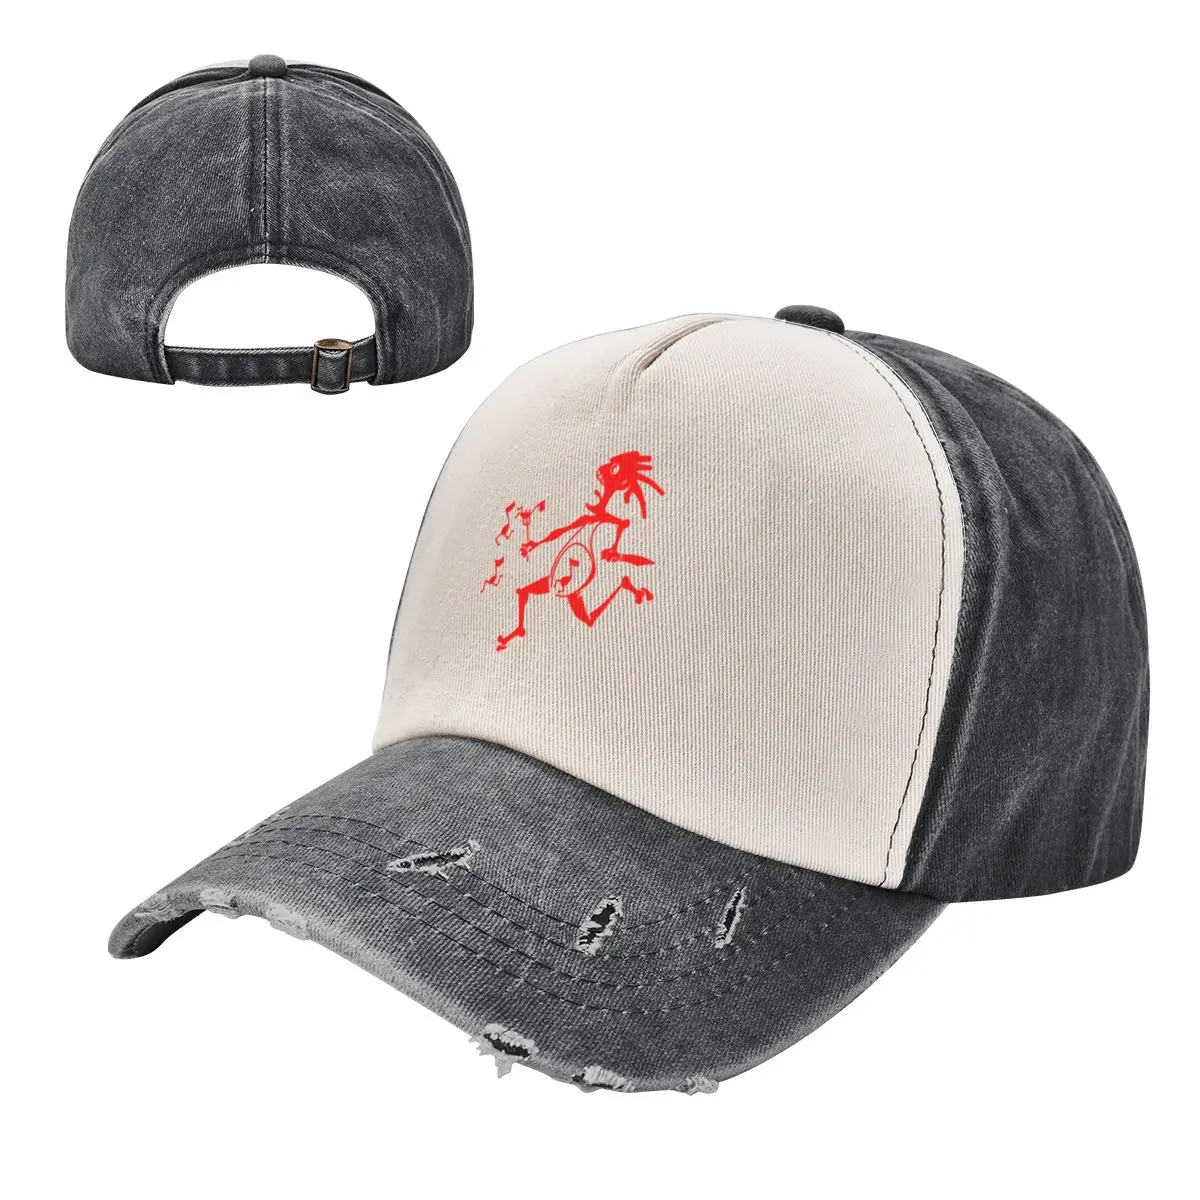 Czarnowite wzornictwo logo zespołu rockowego szeroko rozpowszechnione kapelusz kowbojski panicCap Cosplay czapka typu Trucker nowością w czapce męskiej damskiej